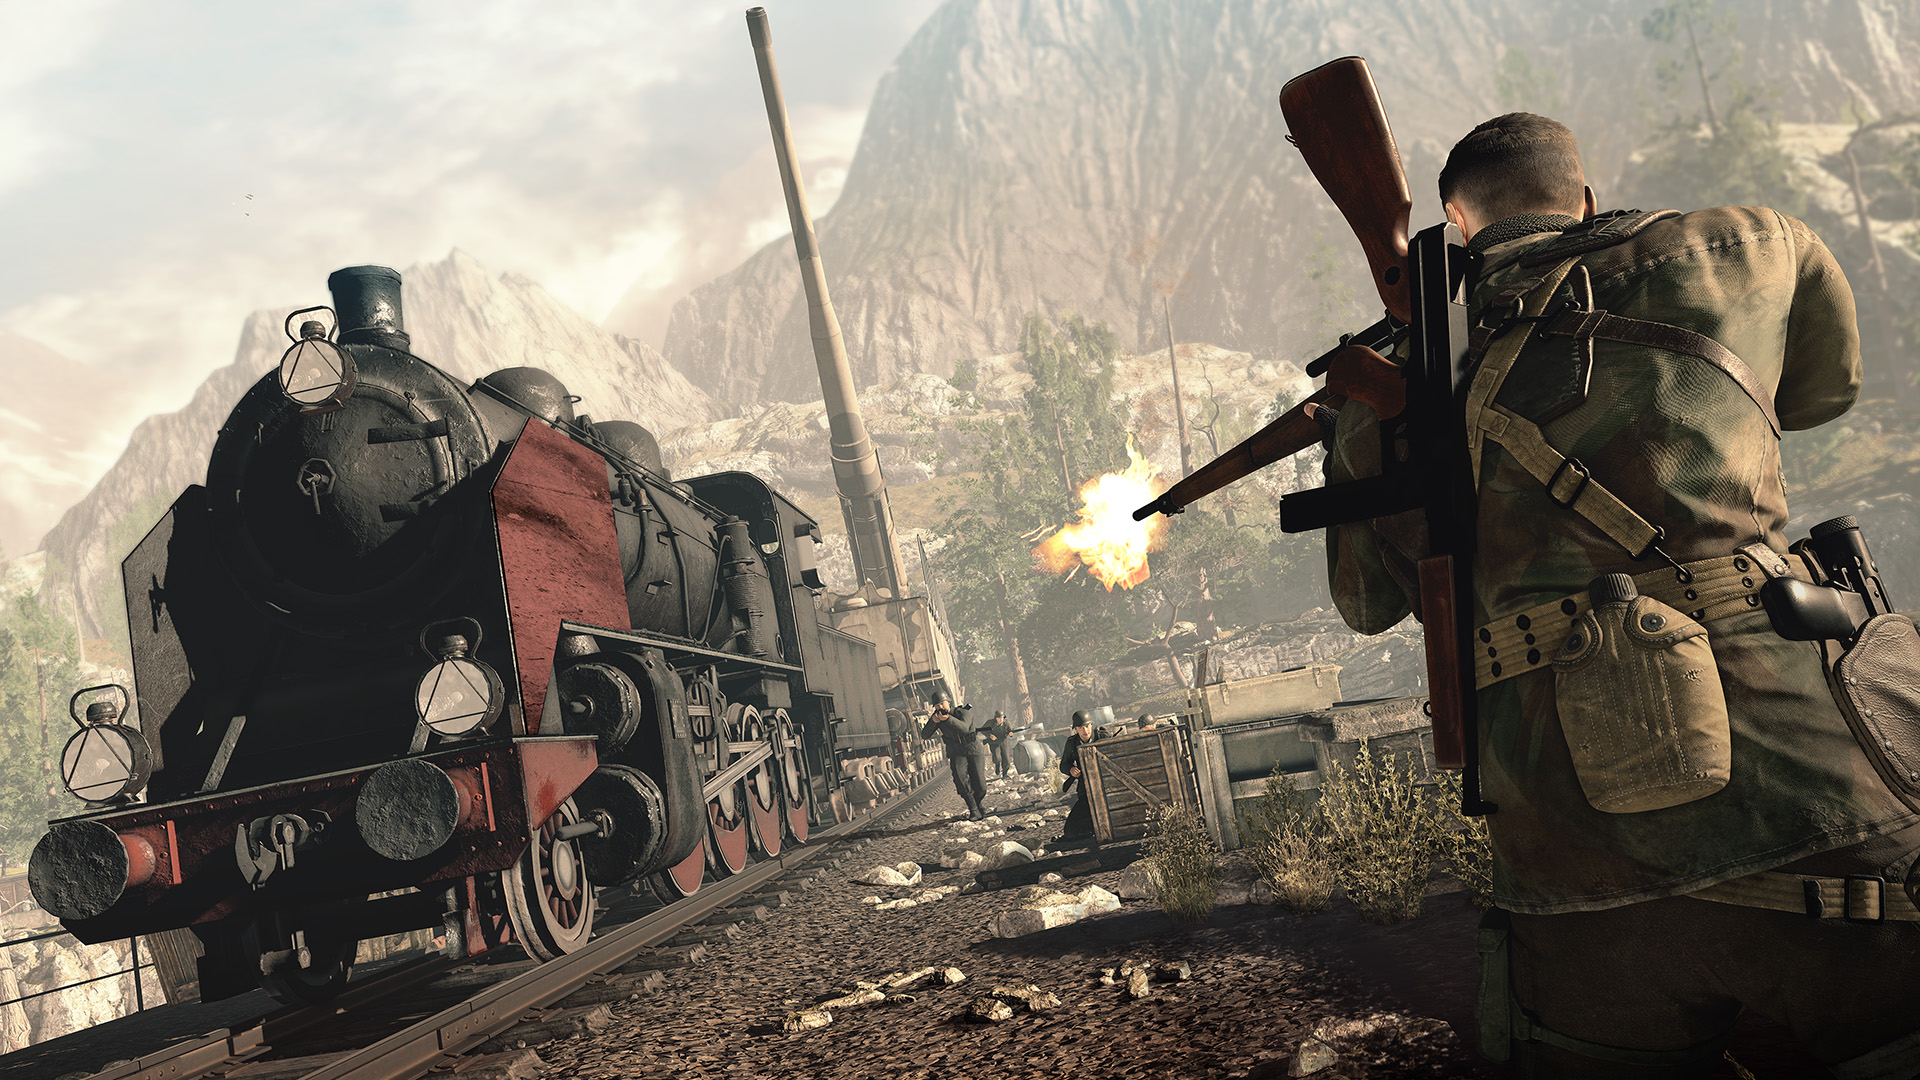 Sniper Elite 4 on Steam